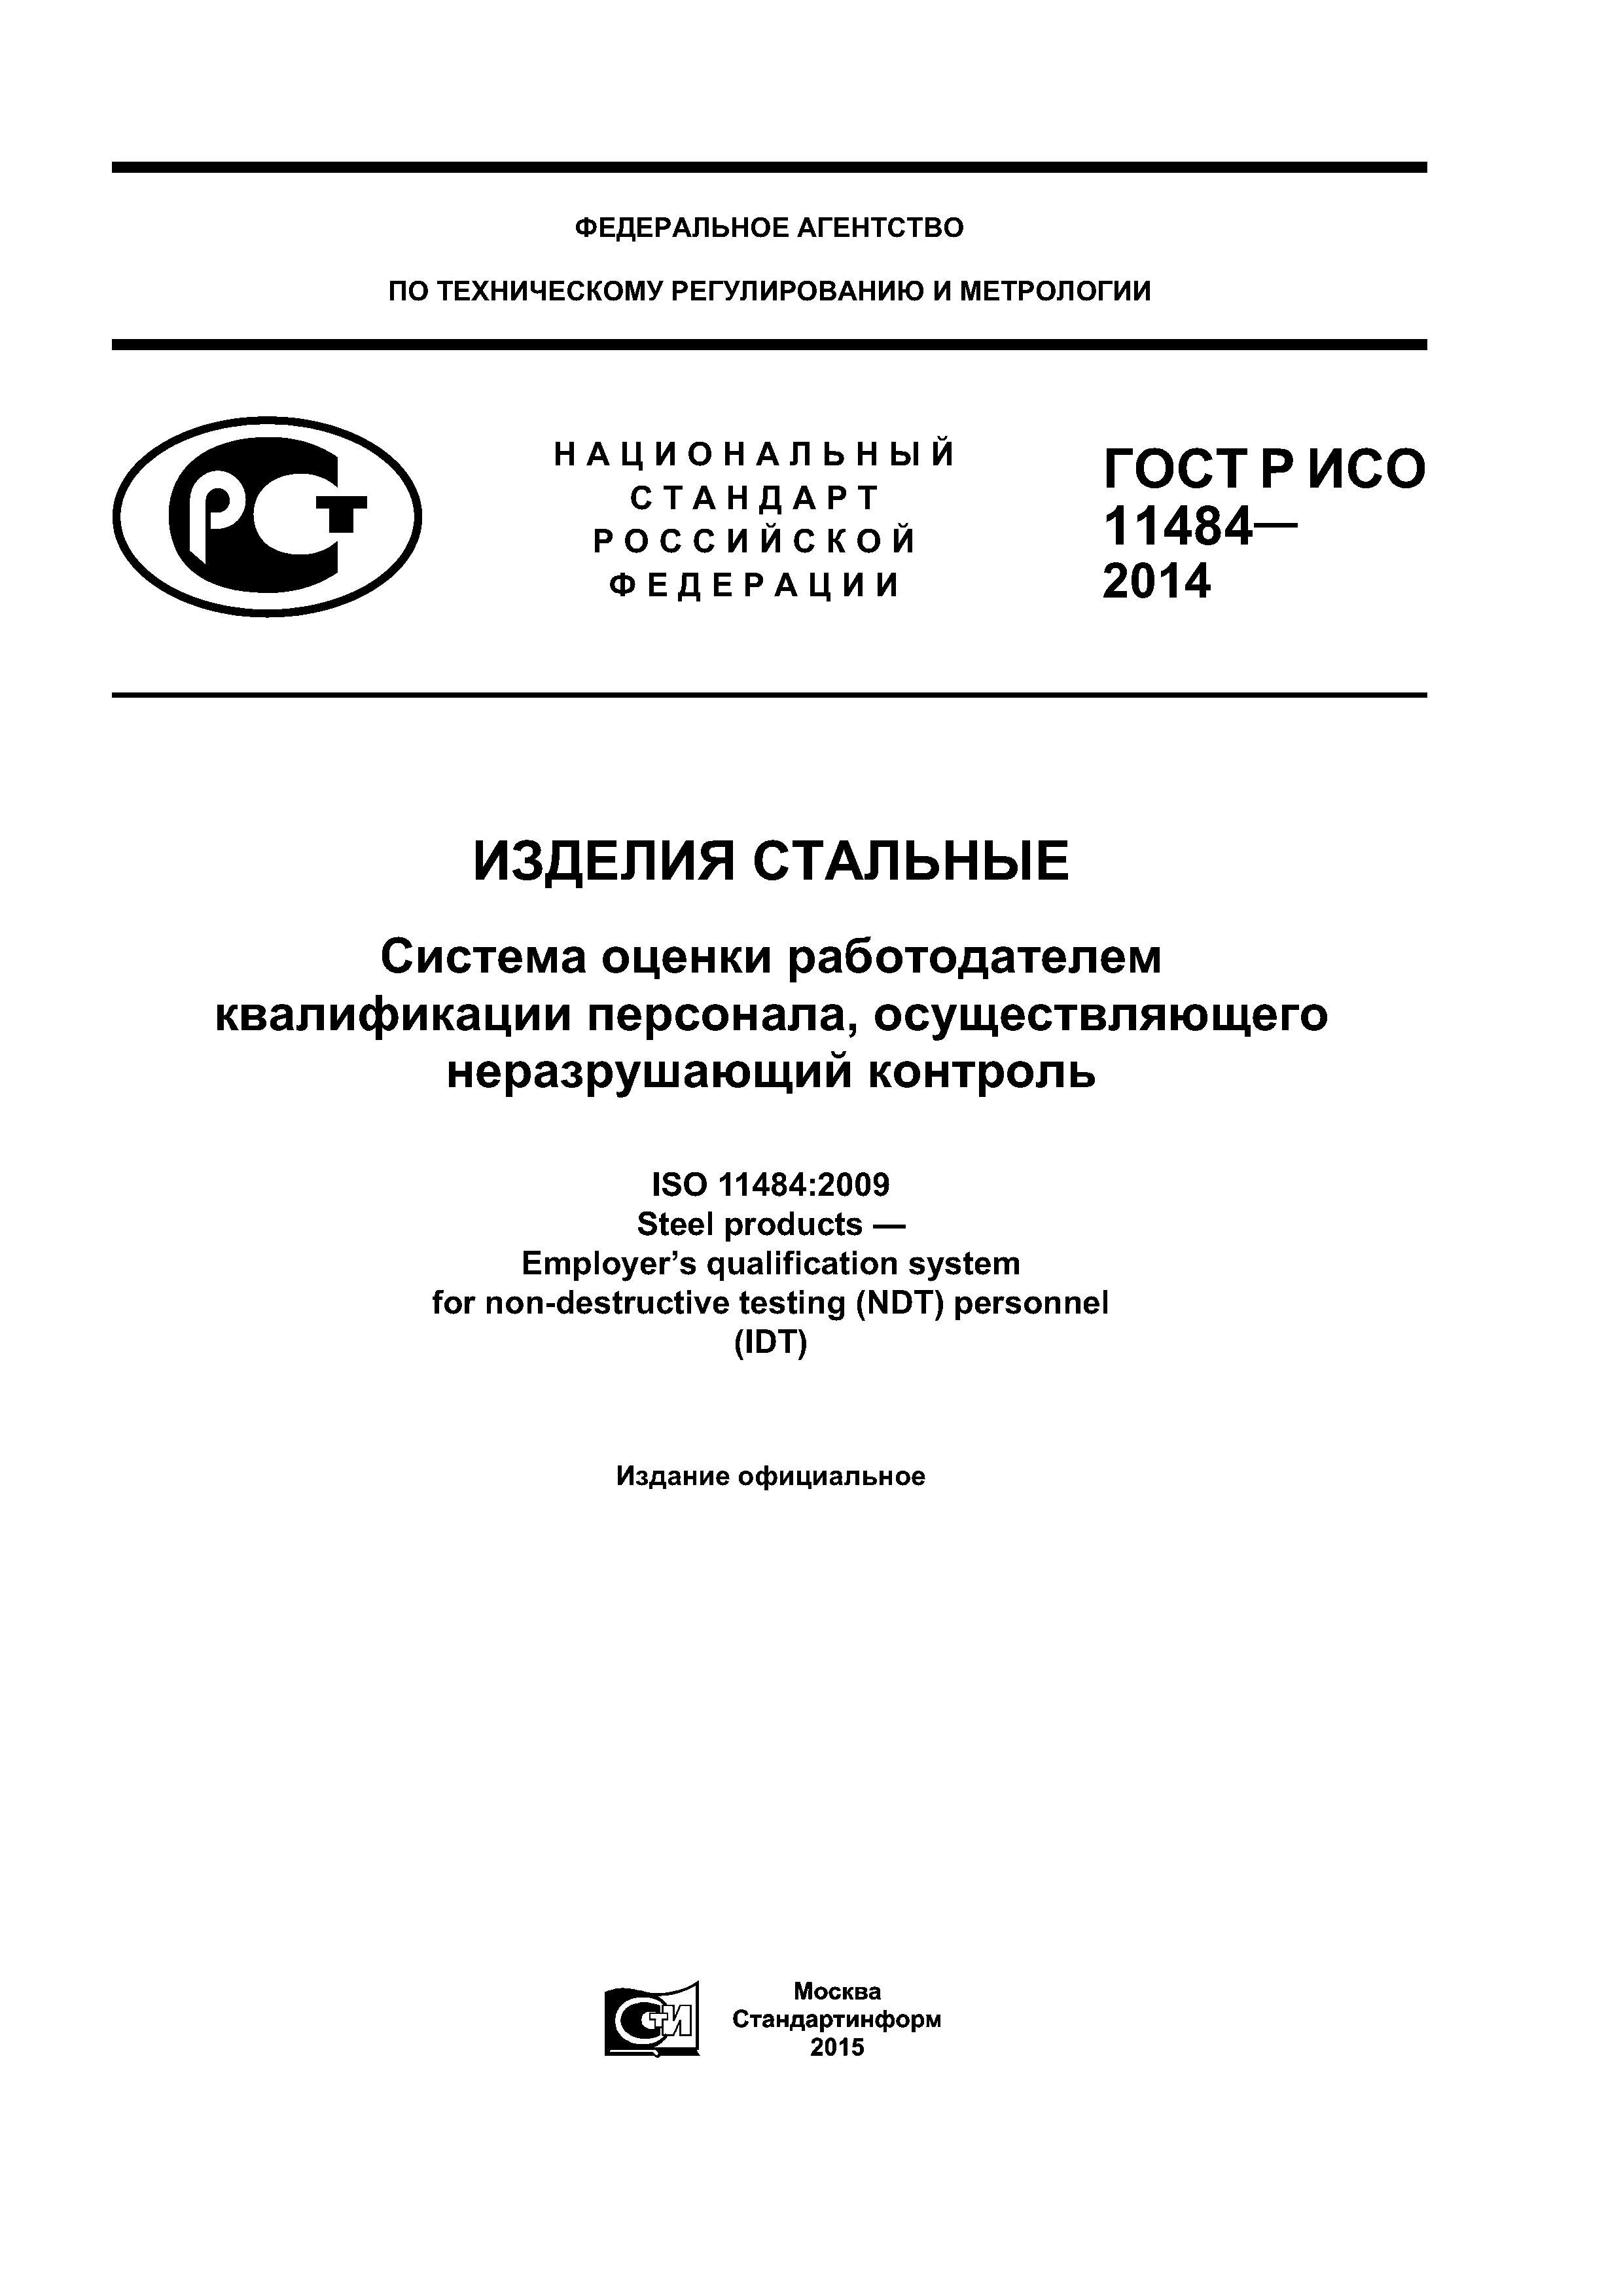 ГОСТ Р ИСО 11484-2014